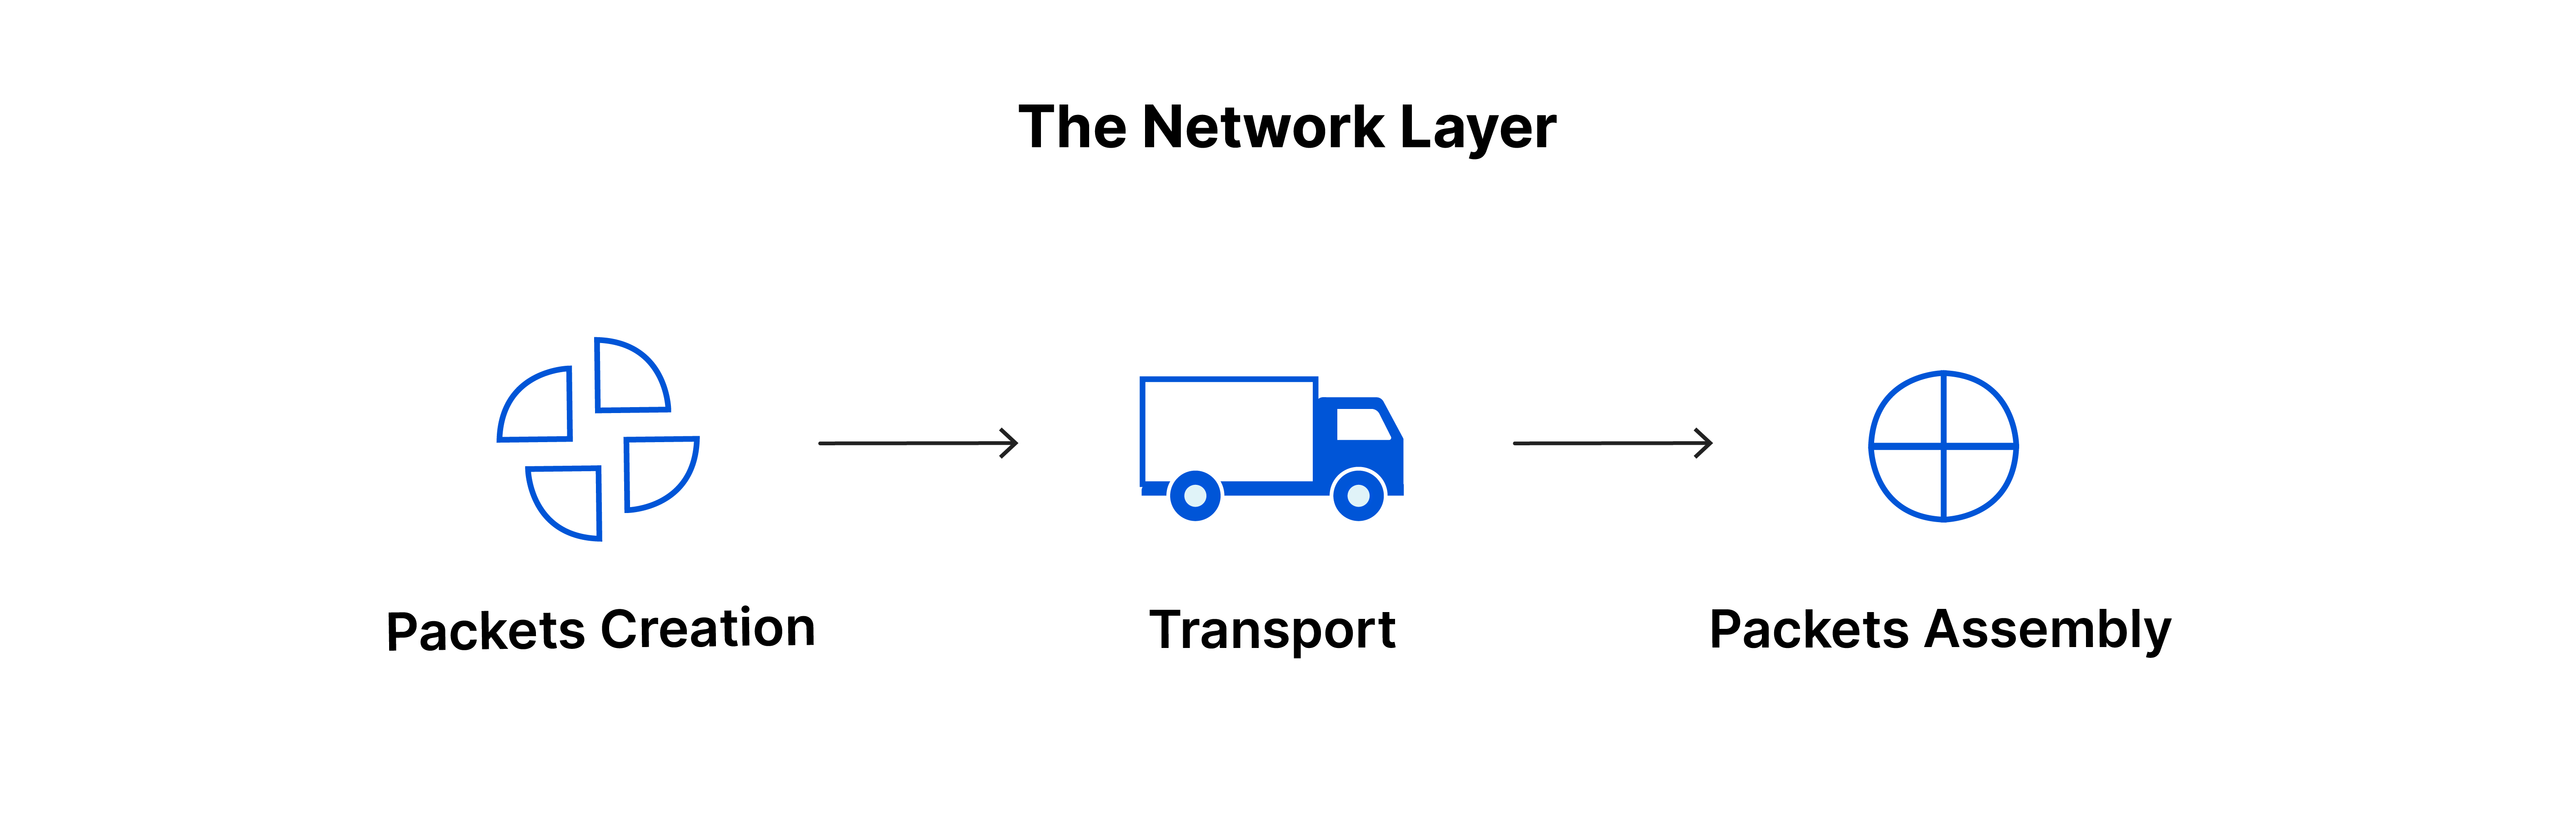 La capa de red: creación de paquetes, transporte, ensamblado de paquetes